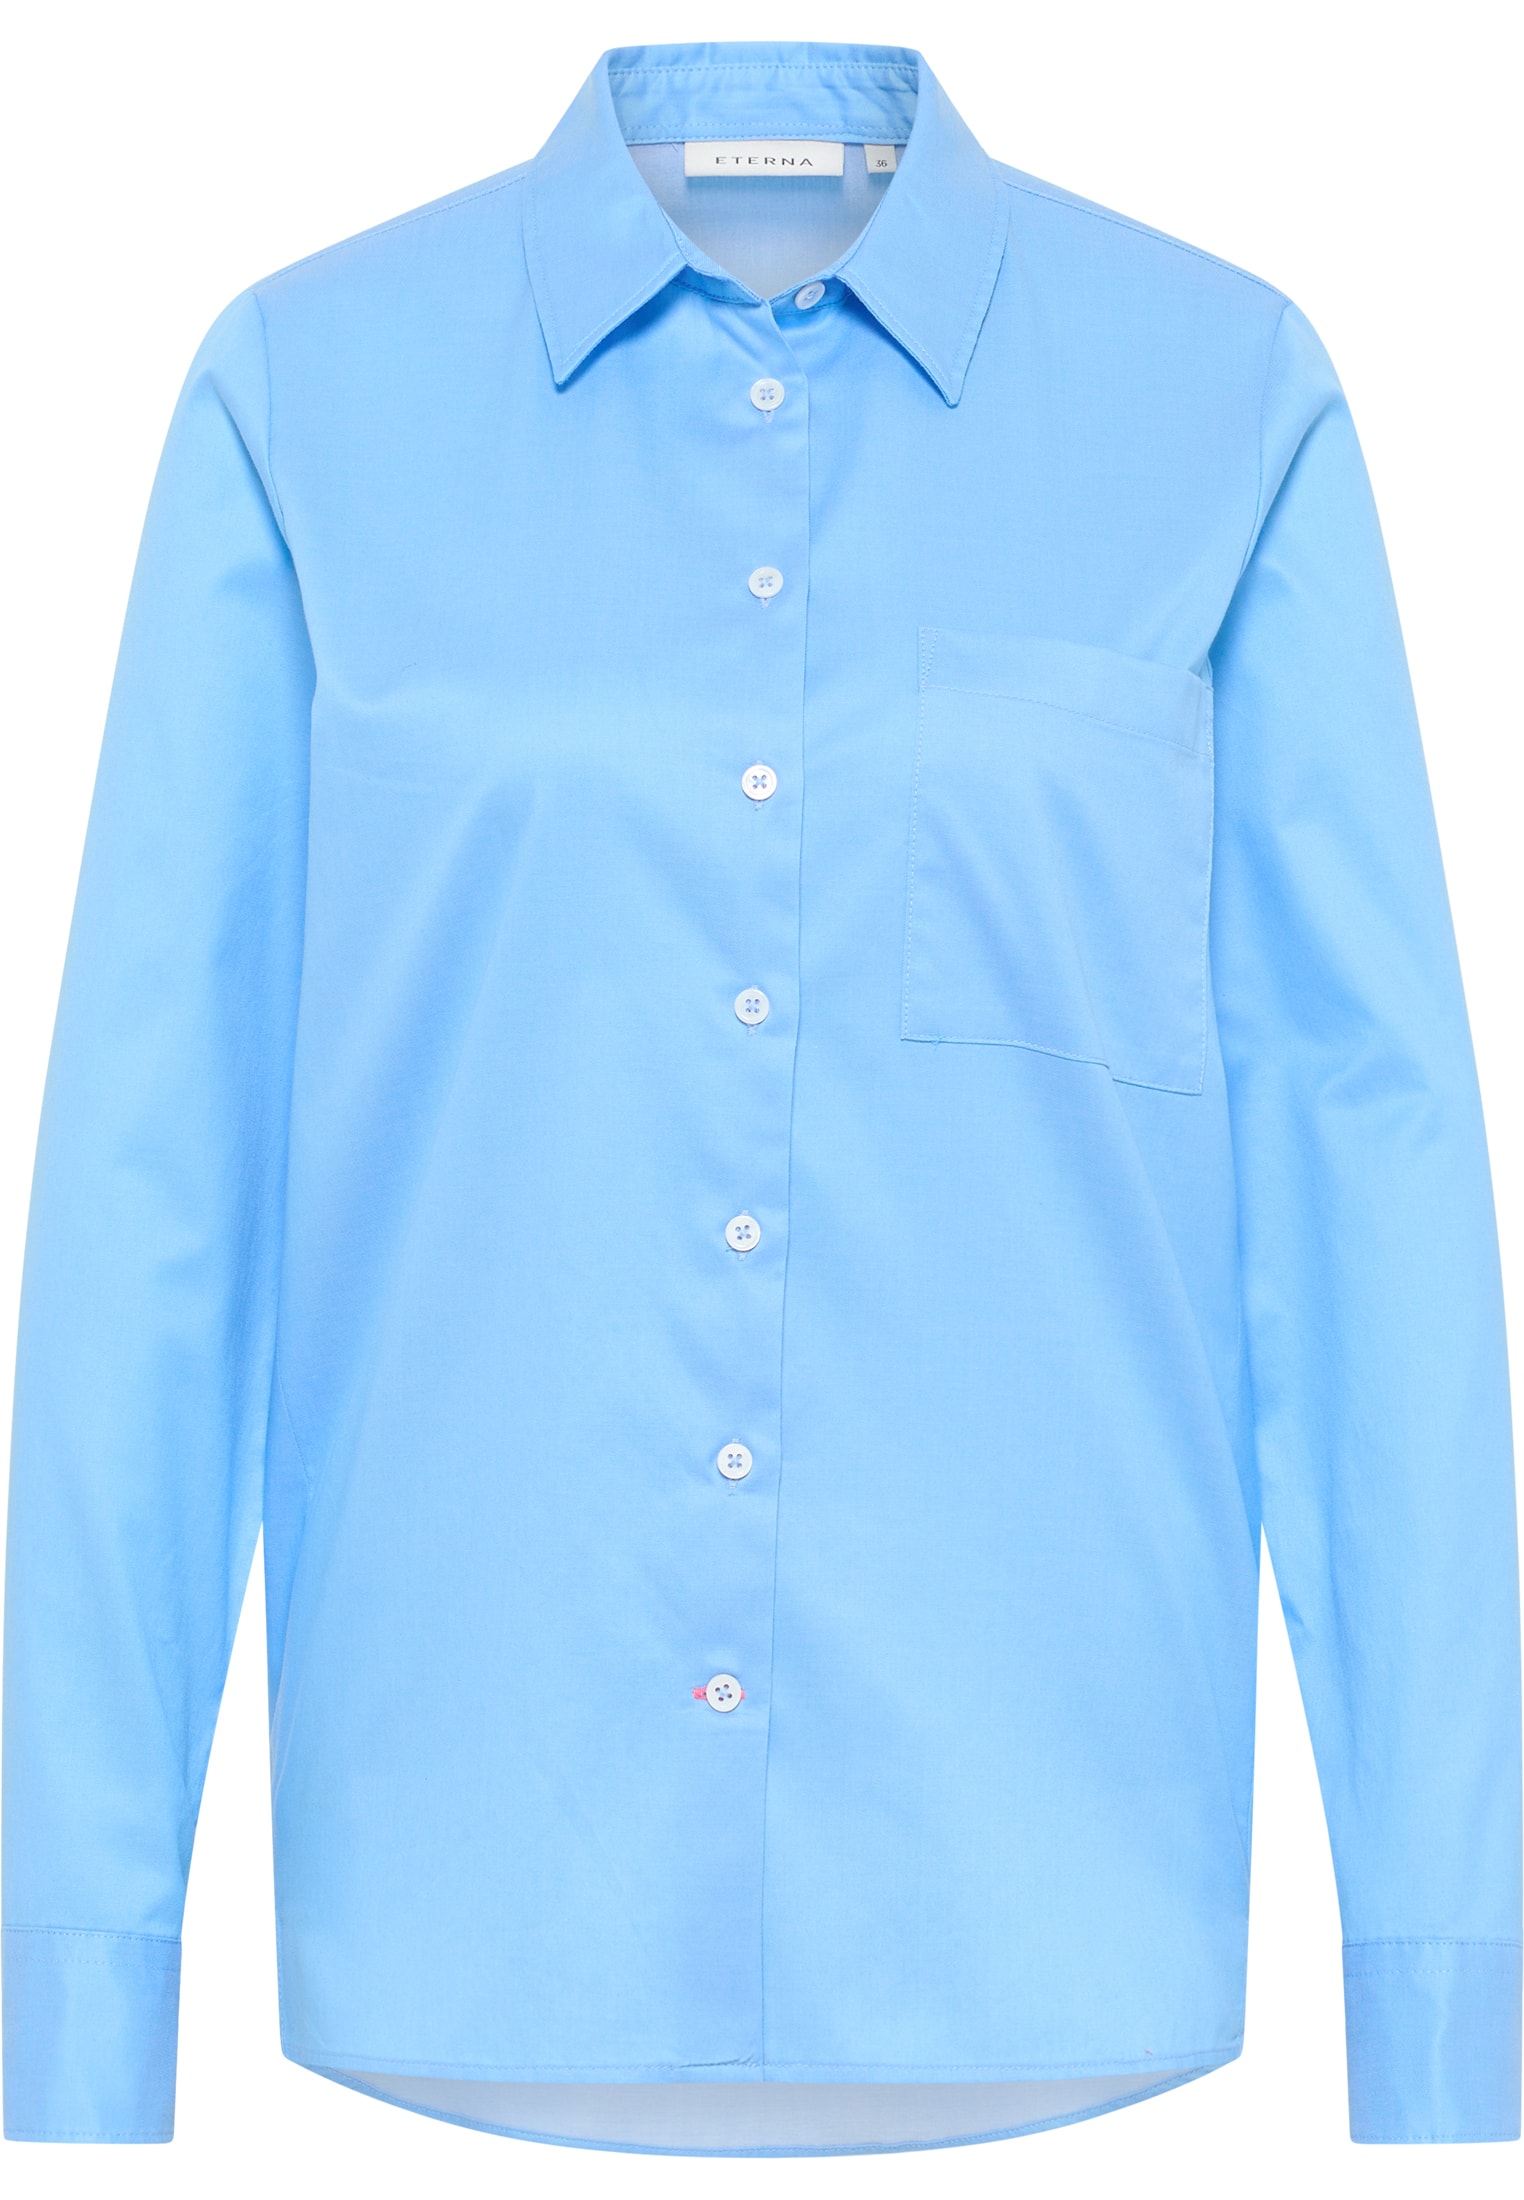 Shirt Luxury Langarm in unifarben | blau 2BL03851-01-41-38-1/1 blau | Bluse | 38 | Soft